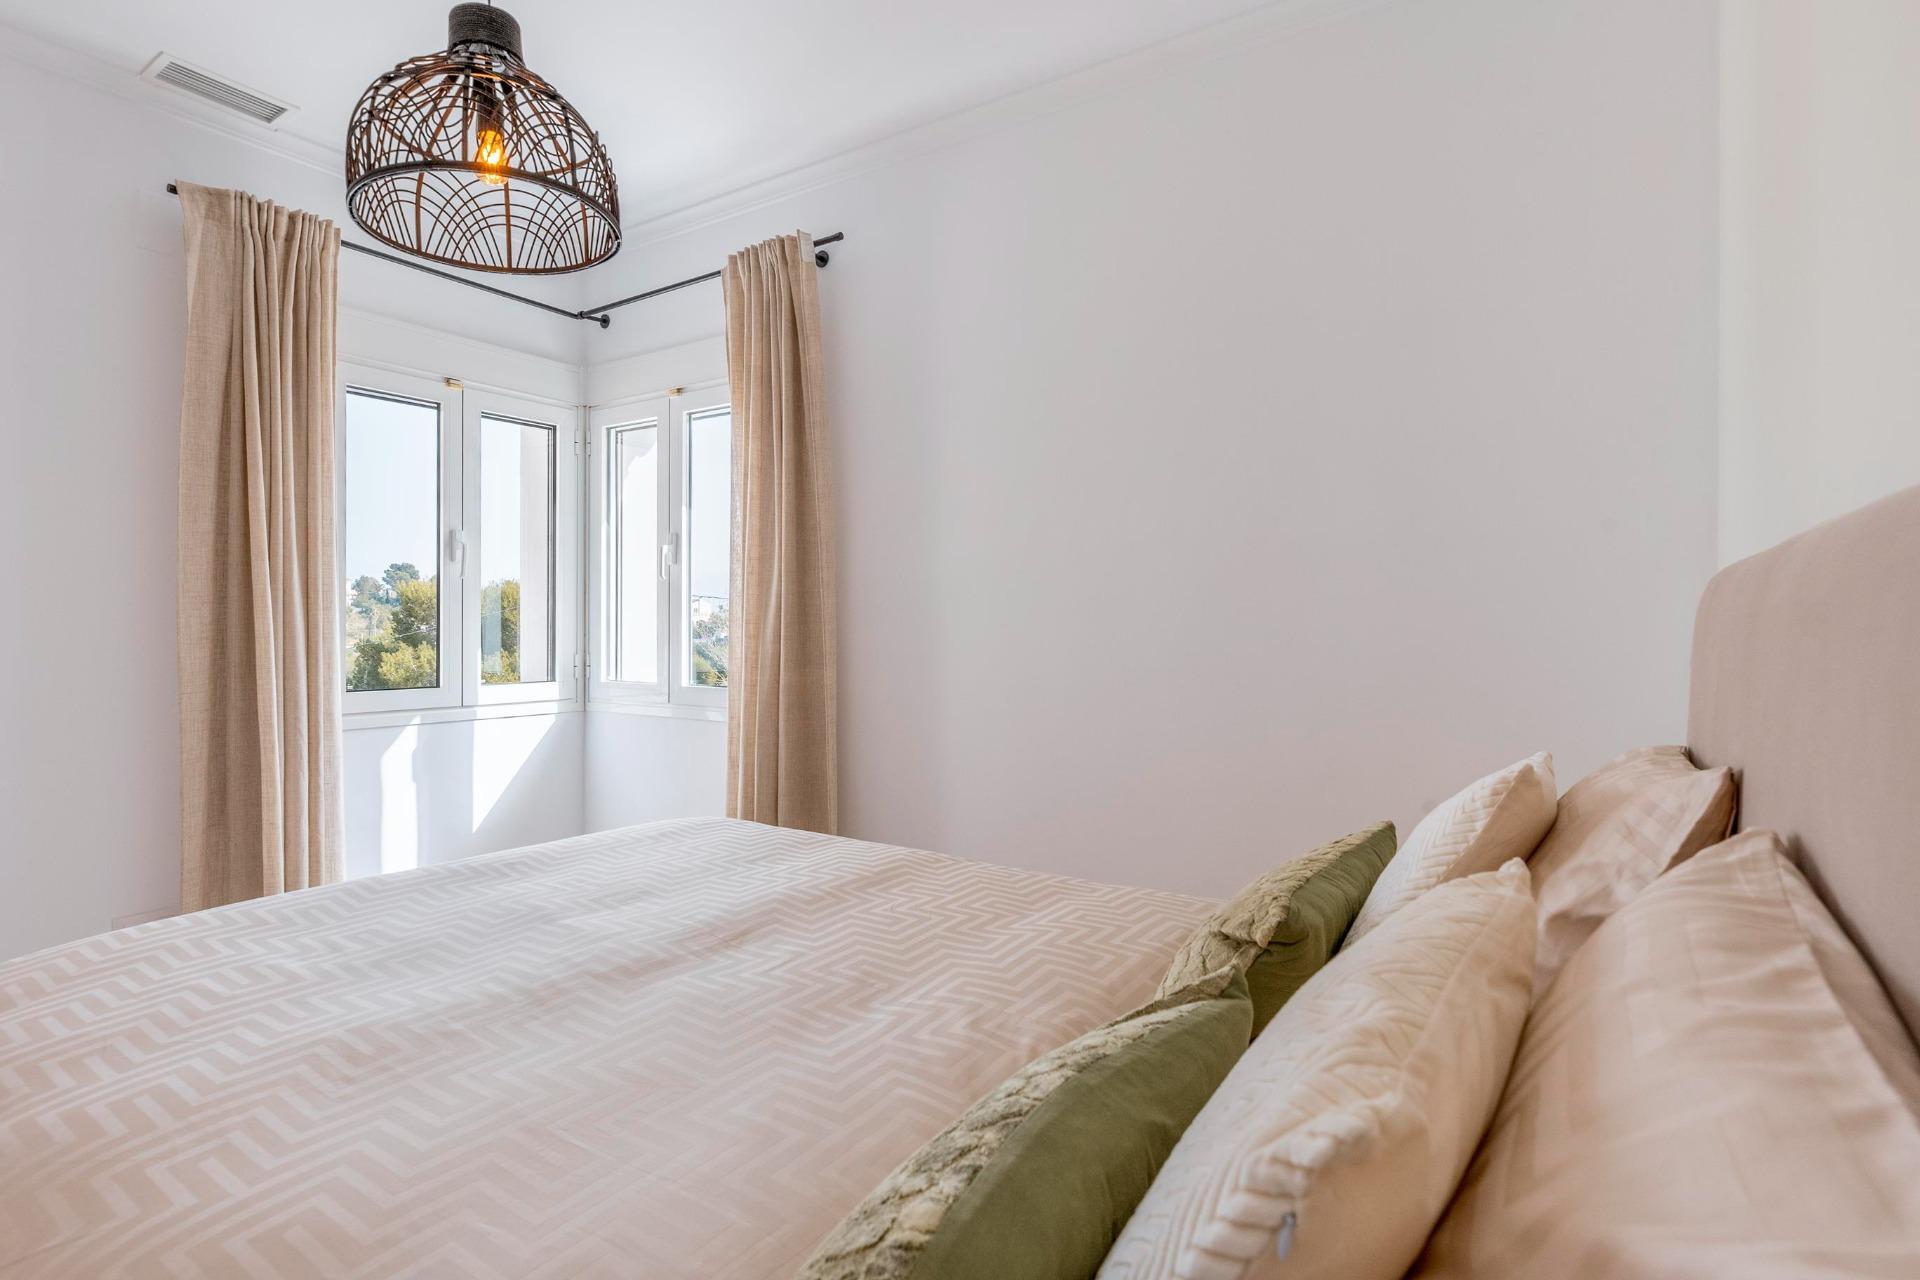 VILLA récemment RÉNOVÉE de style méditerranéen de 4 chambres à coucher avec vue sur la mer à Jávea